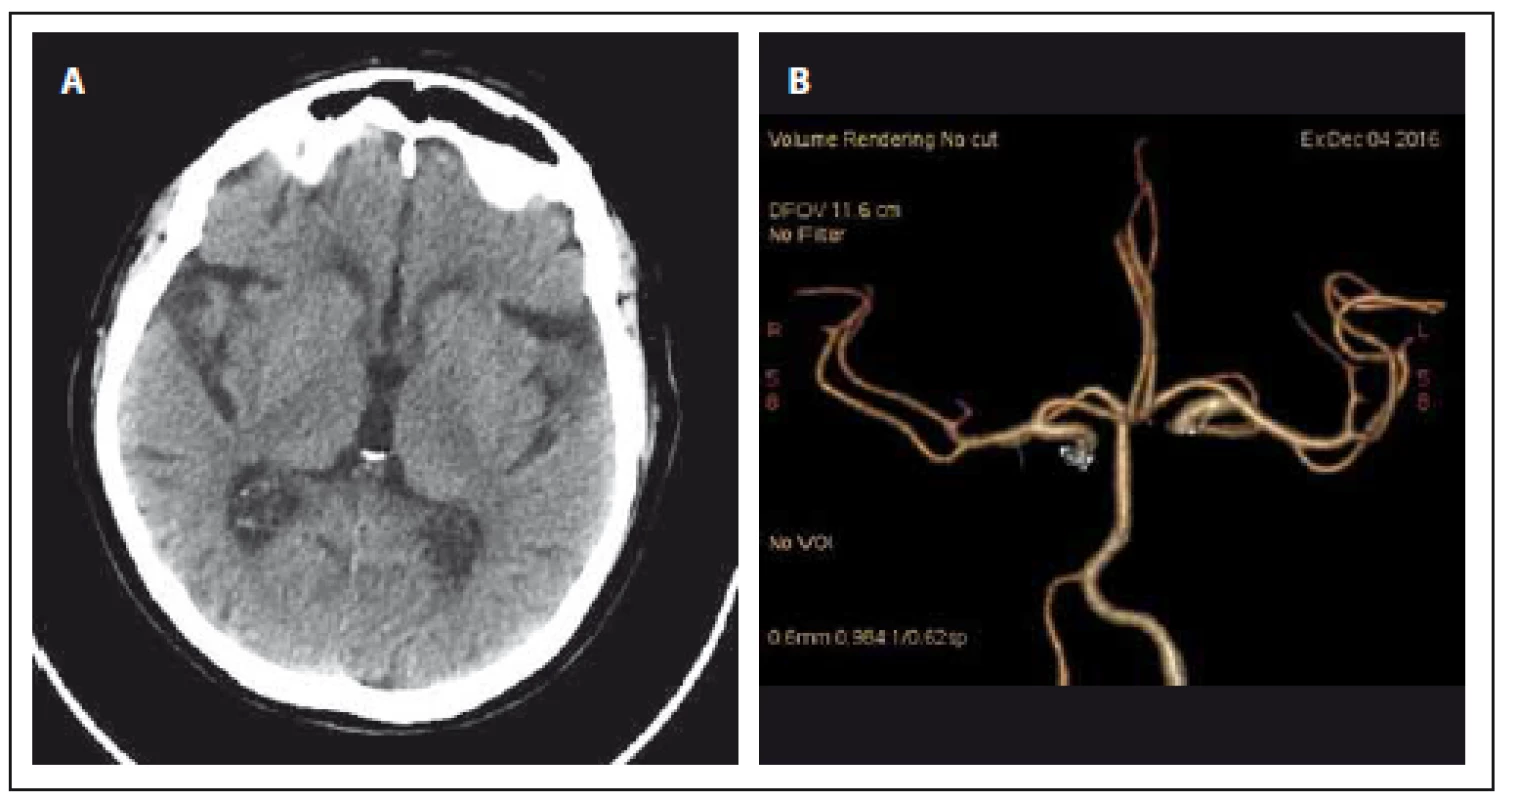 CT mozku při přijetí.
Obr. 1A) Nativ.
Obr. 1B) CT angiografie (Volume Rendering Technique).
Fig. 1. Brain CT on admission
Fig. 1A) Unenhanced.
Fig. 1B) CT angiography (Volume Rendering Technique).